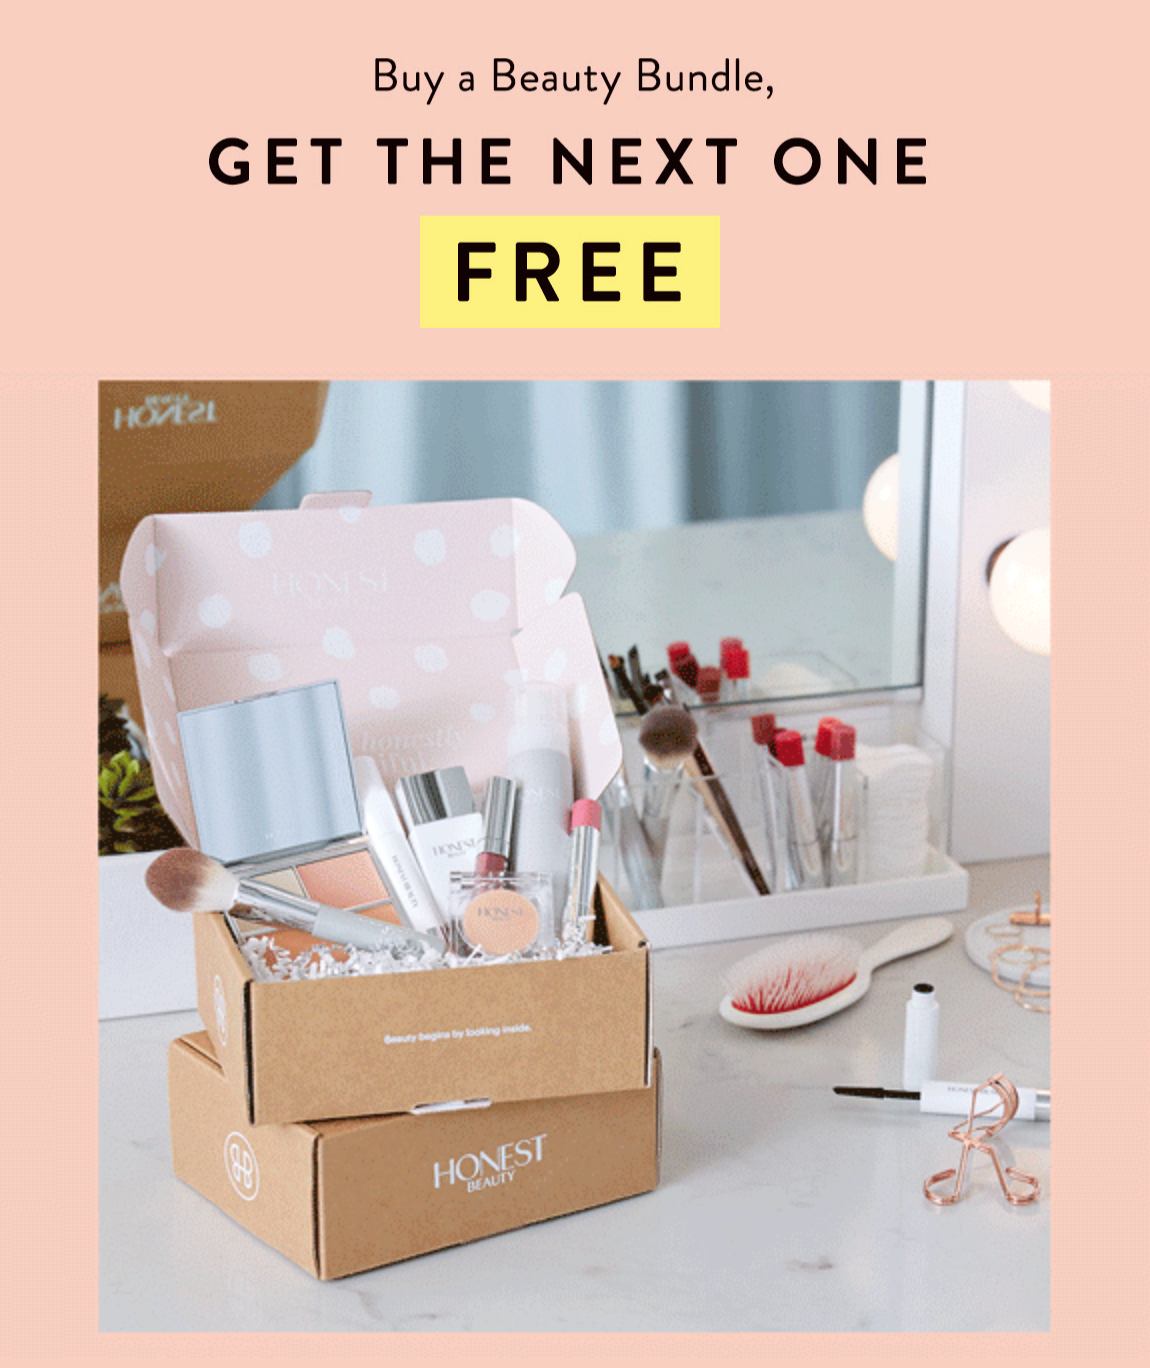 Honest Beauty Bundle Sale – Get Your 2nd Bundle Free